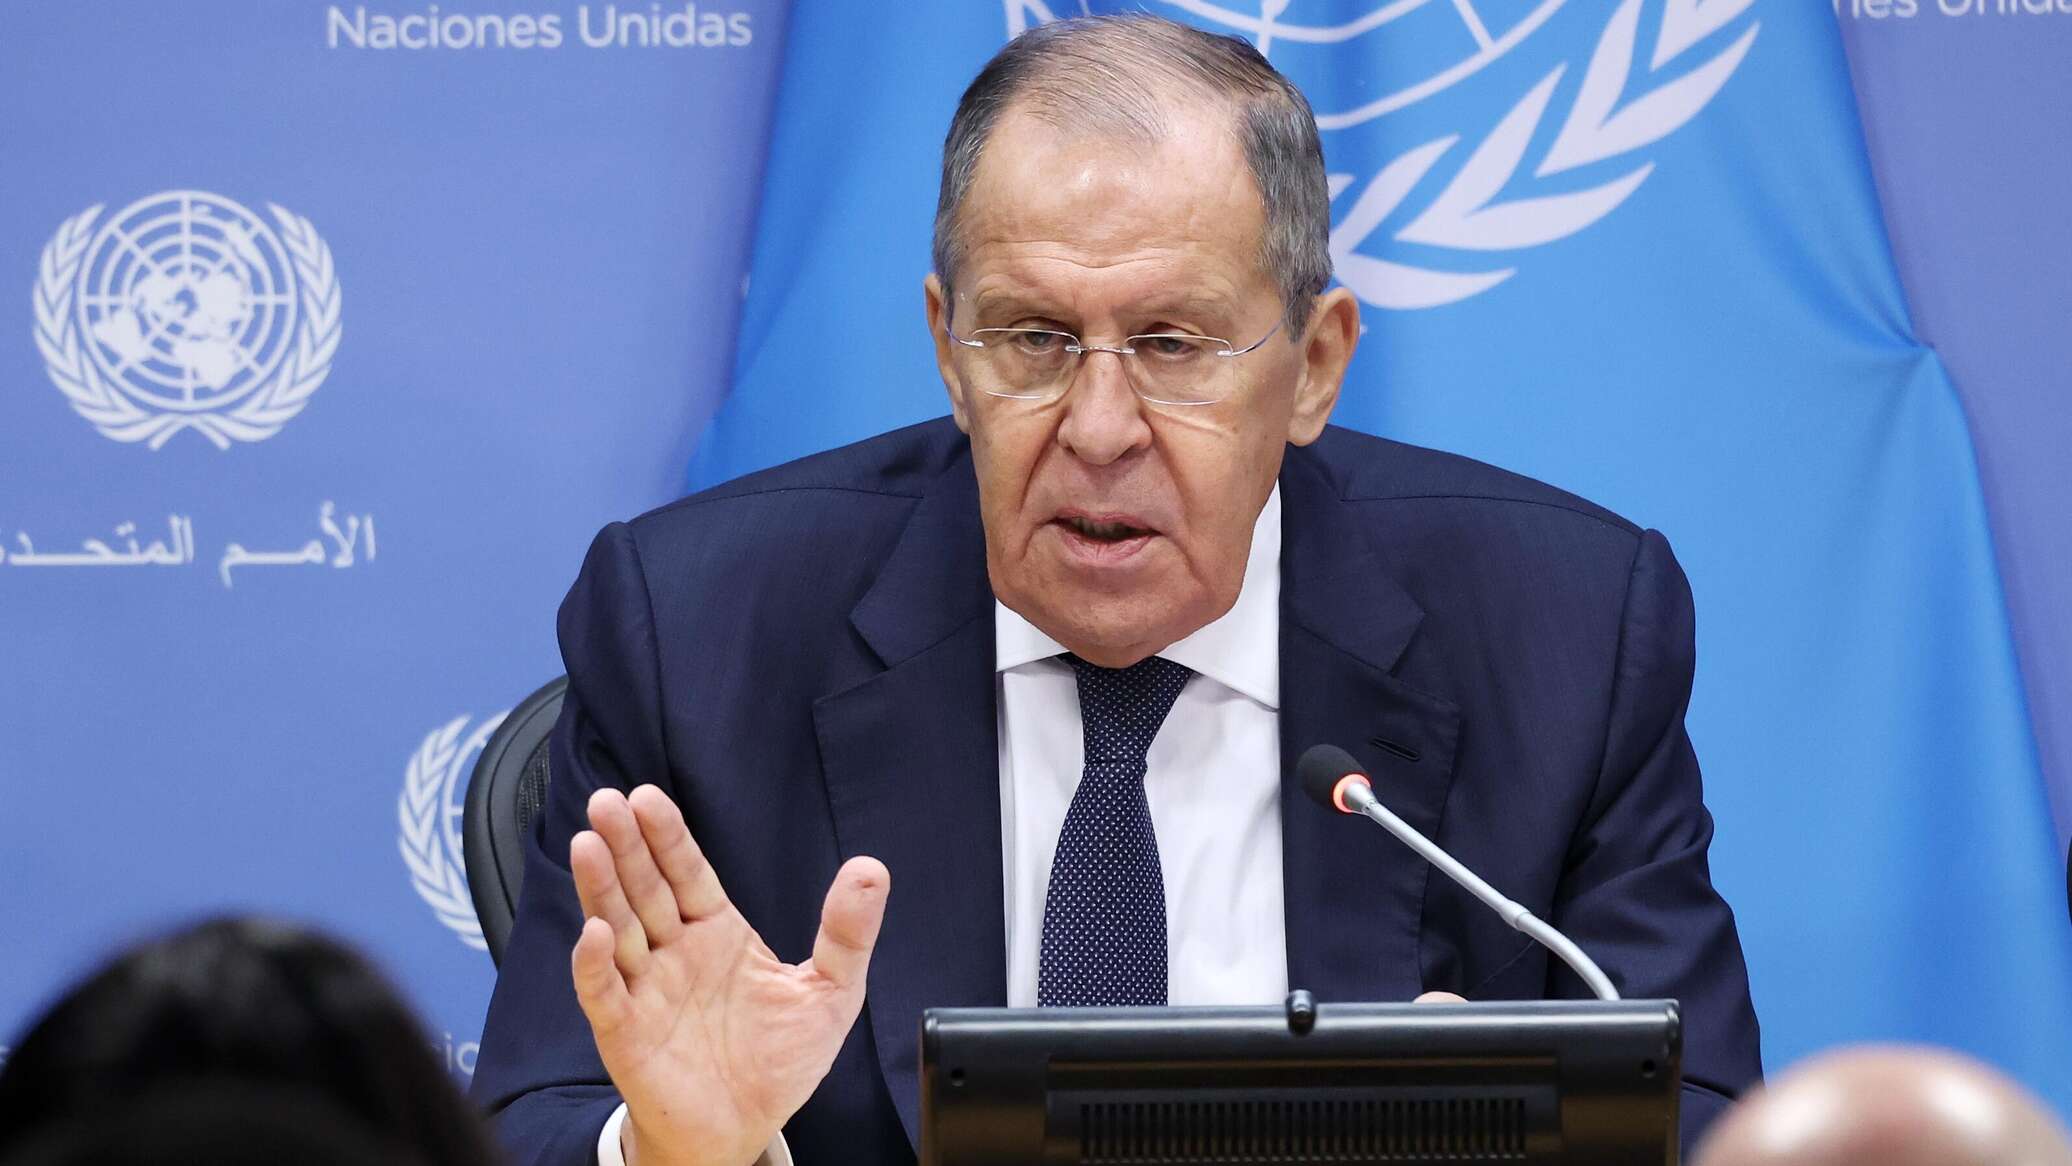 لافروف: روسيا ترسل إشارات لإسرائيل بشأن ضرورة البحث عن حل سلمي في غزة